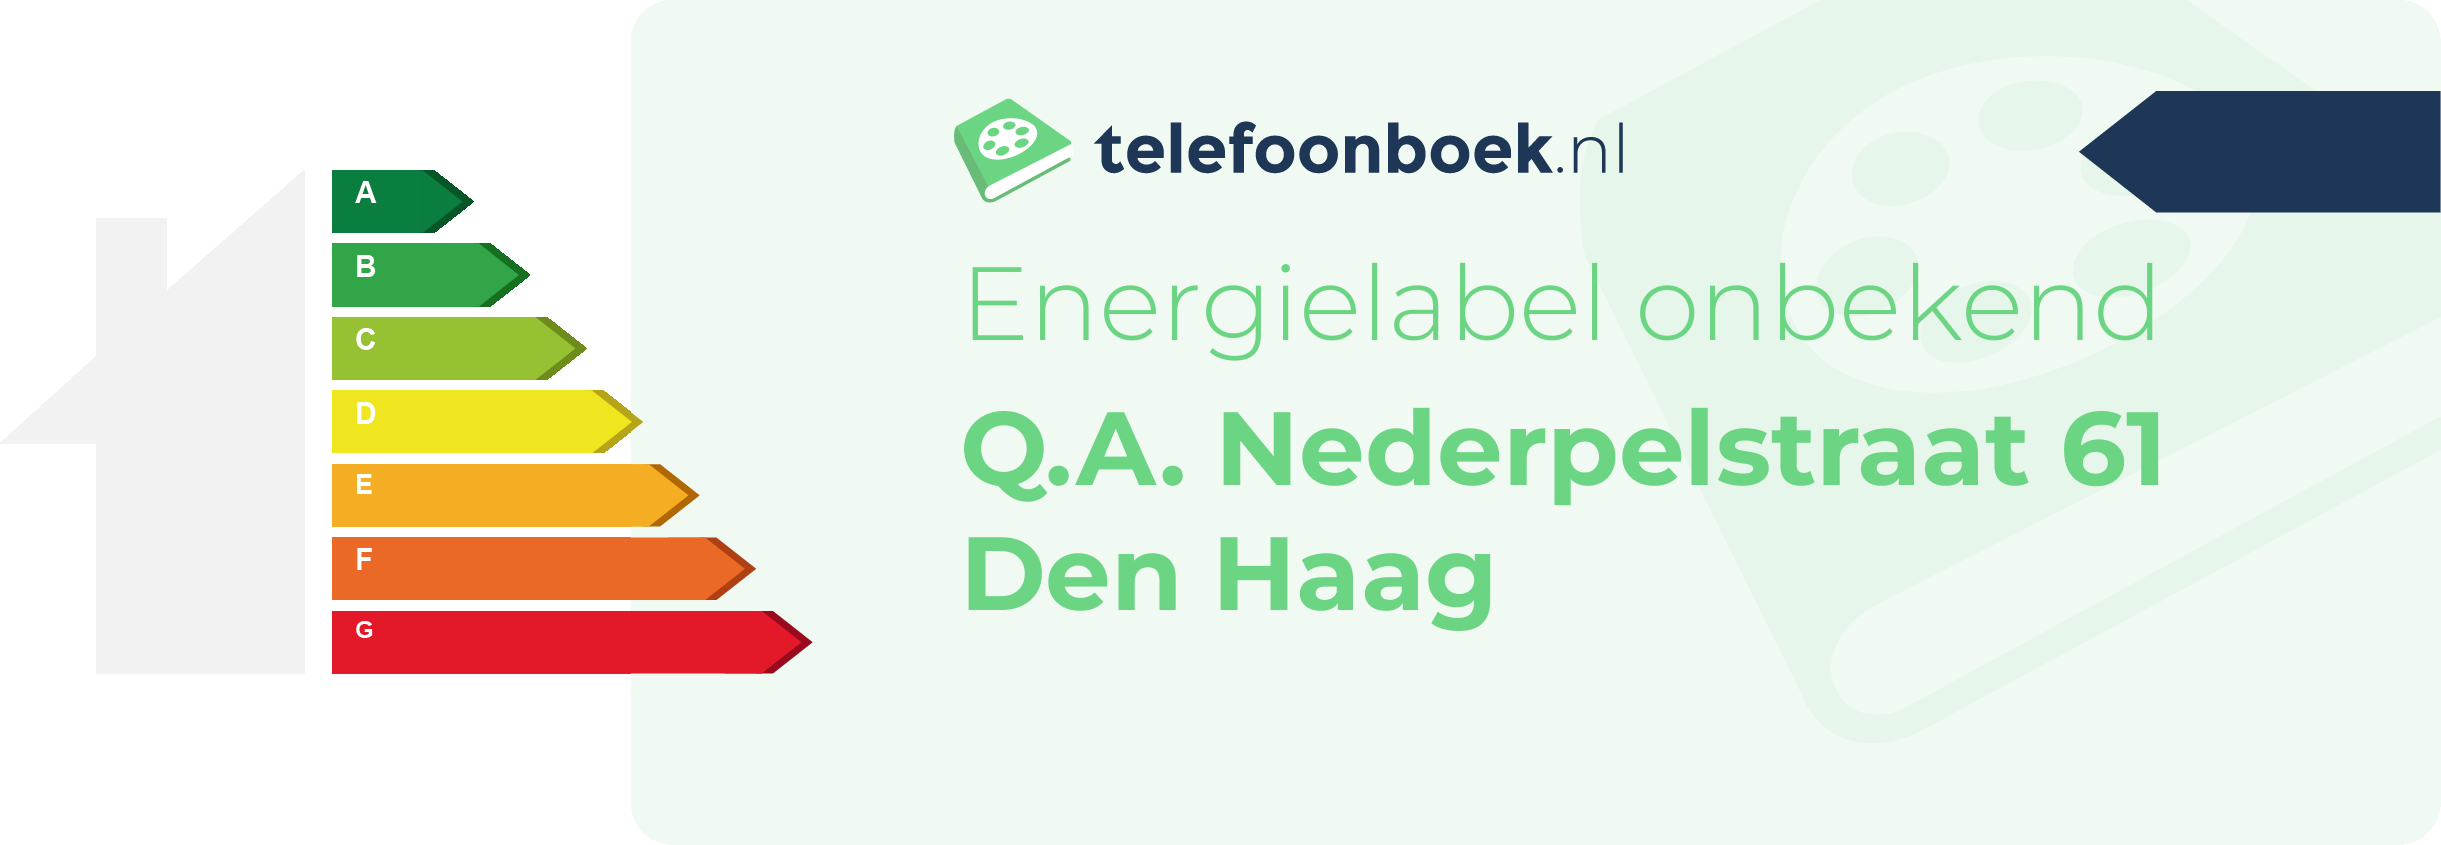 Energielabel Q.A. Nederpelstraat 61 Den Haag